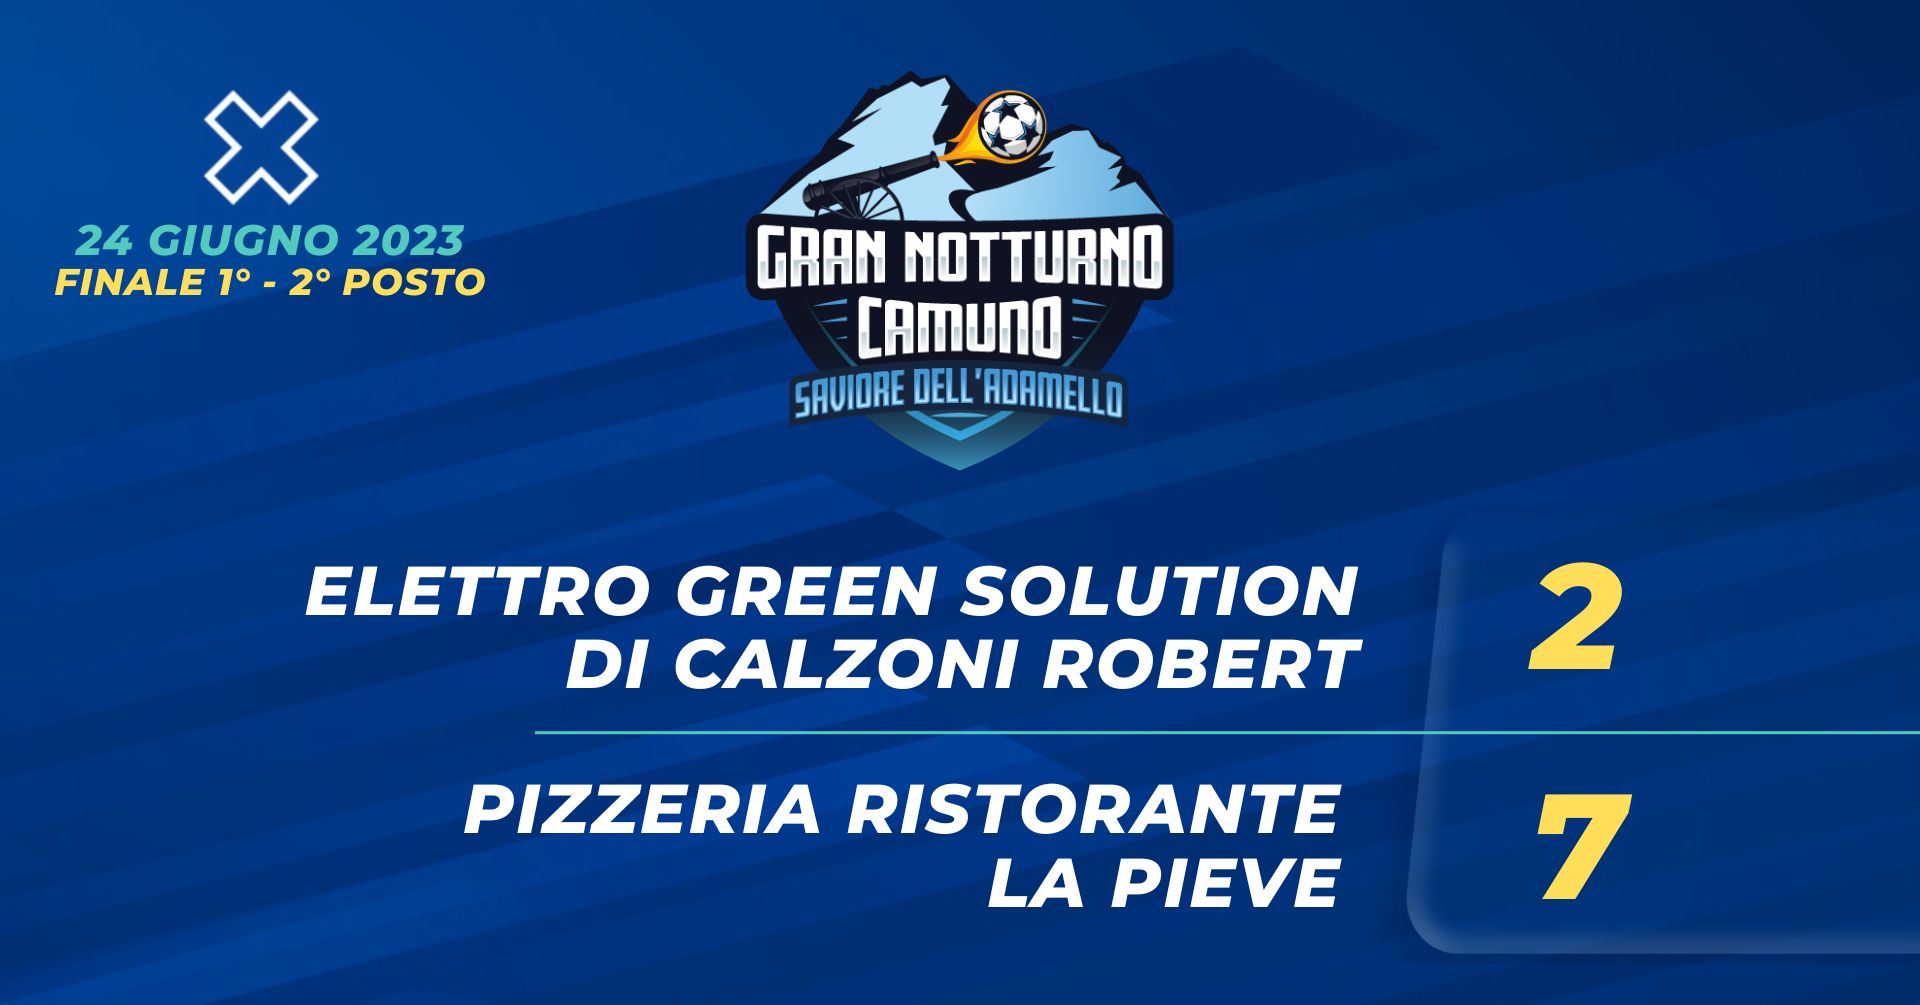 Elettro Green Solution - Pizzeria Ristorante La Pieve 2 - 7